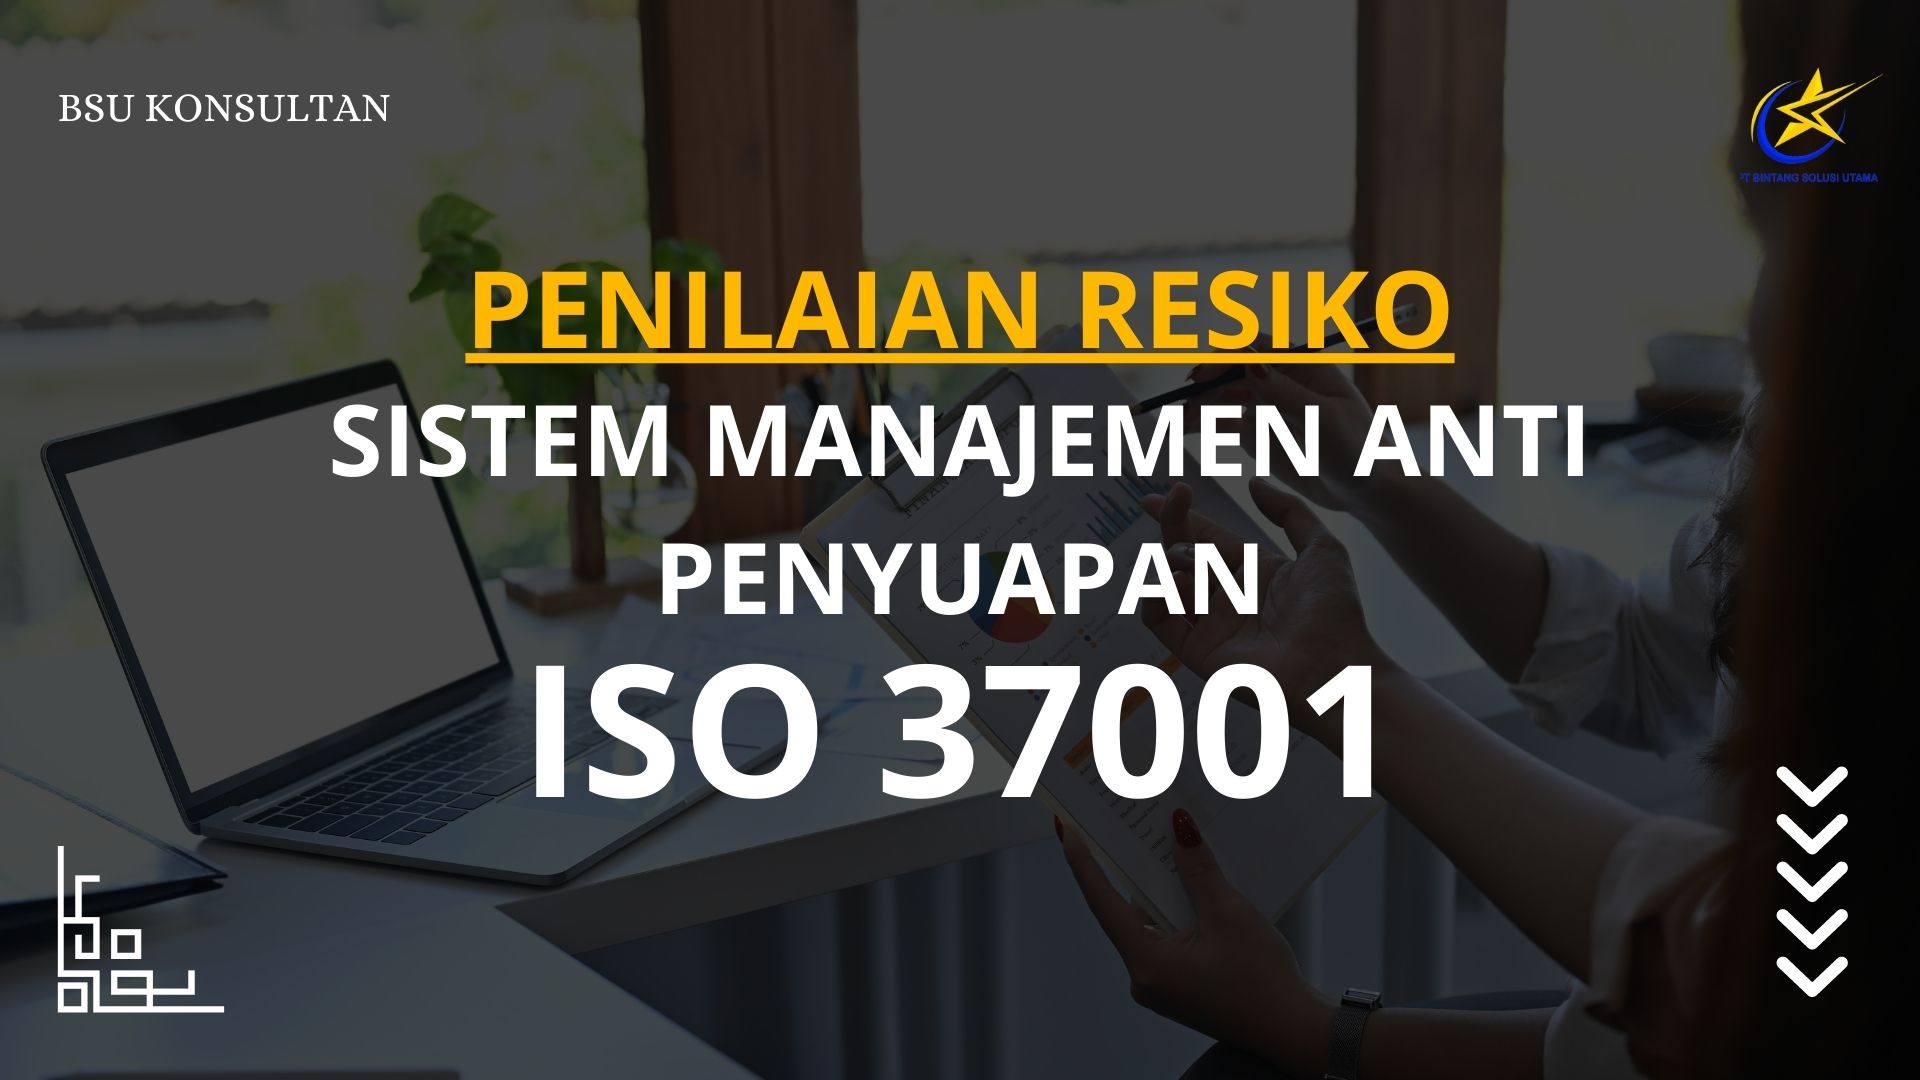 Penilaian Resiko Sistem Manajemen Anti Penyuapan ISO 37001